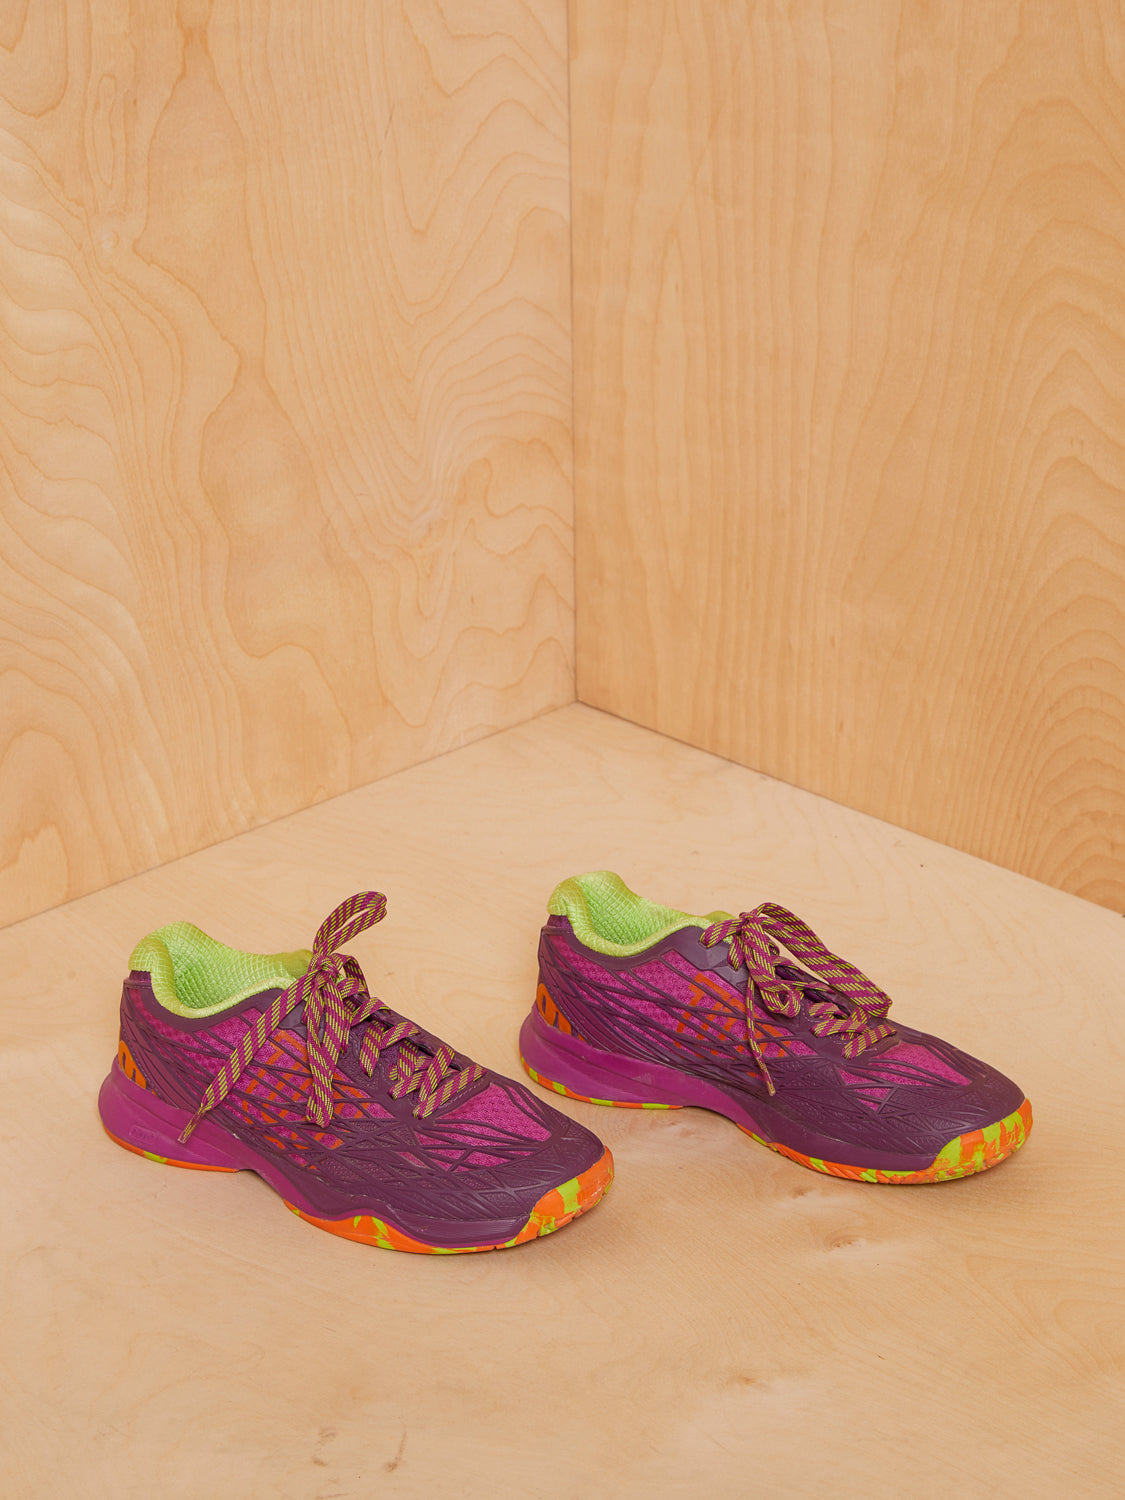 Women’s Wilson Kaos Shoes in Purple/Neon Green/Orange